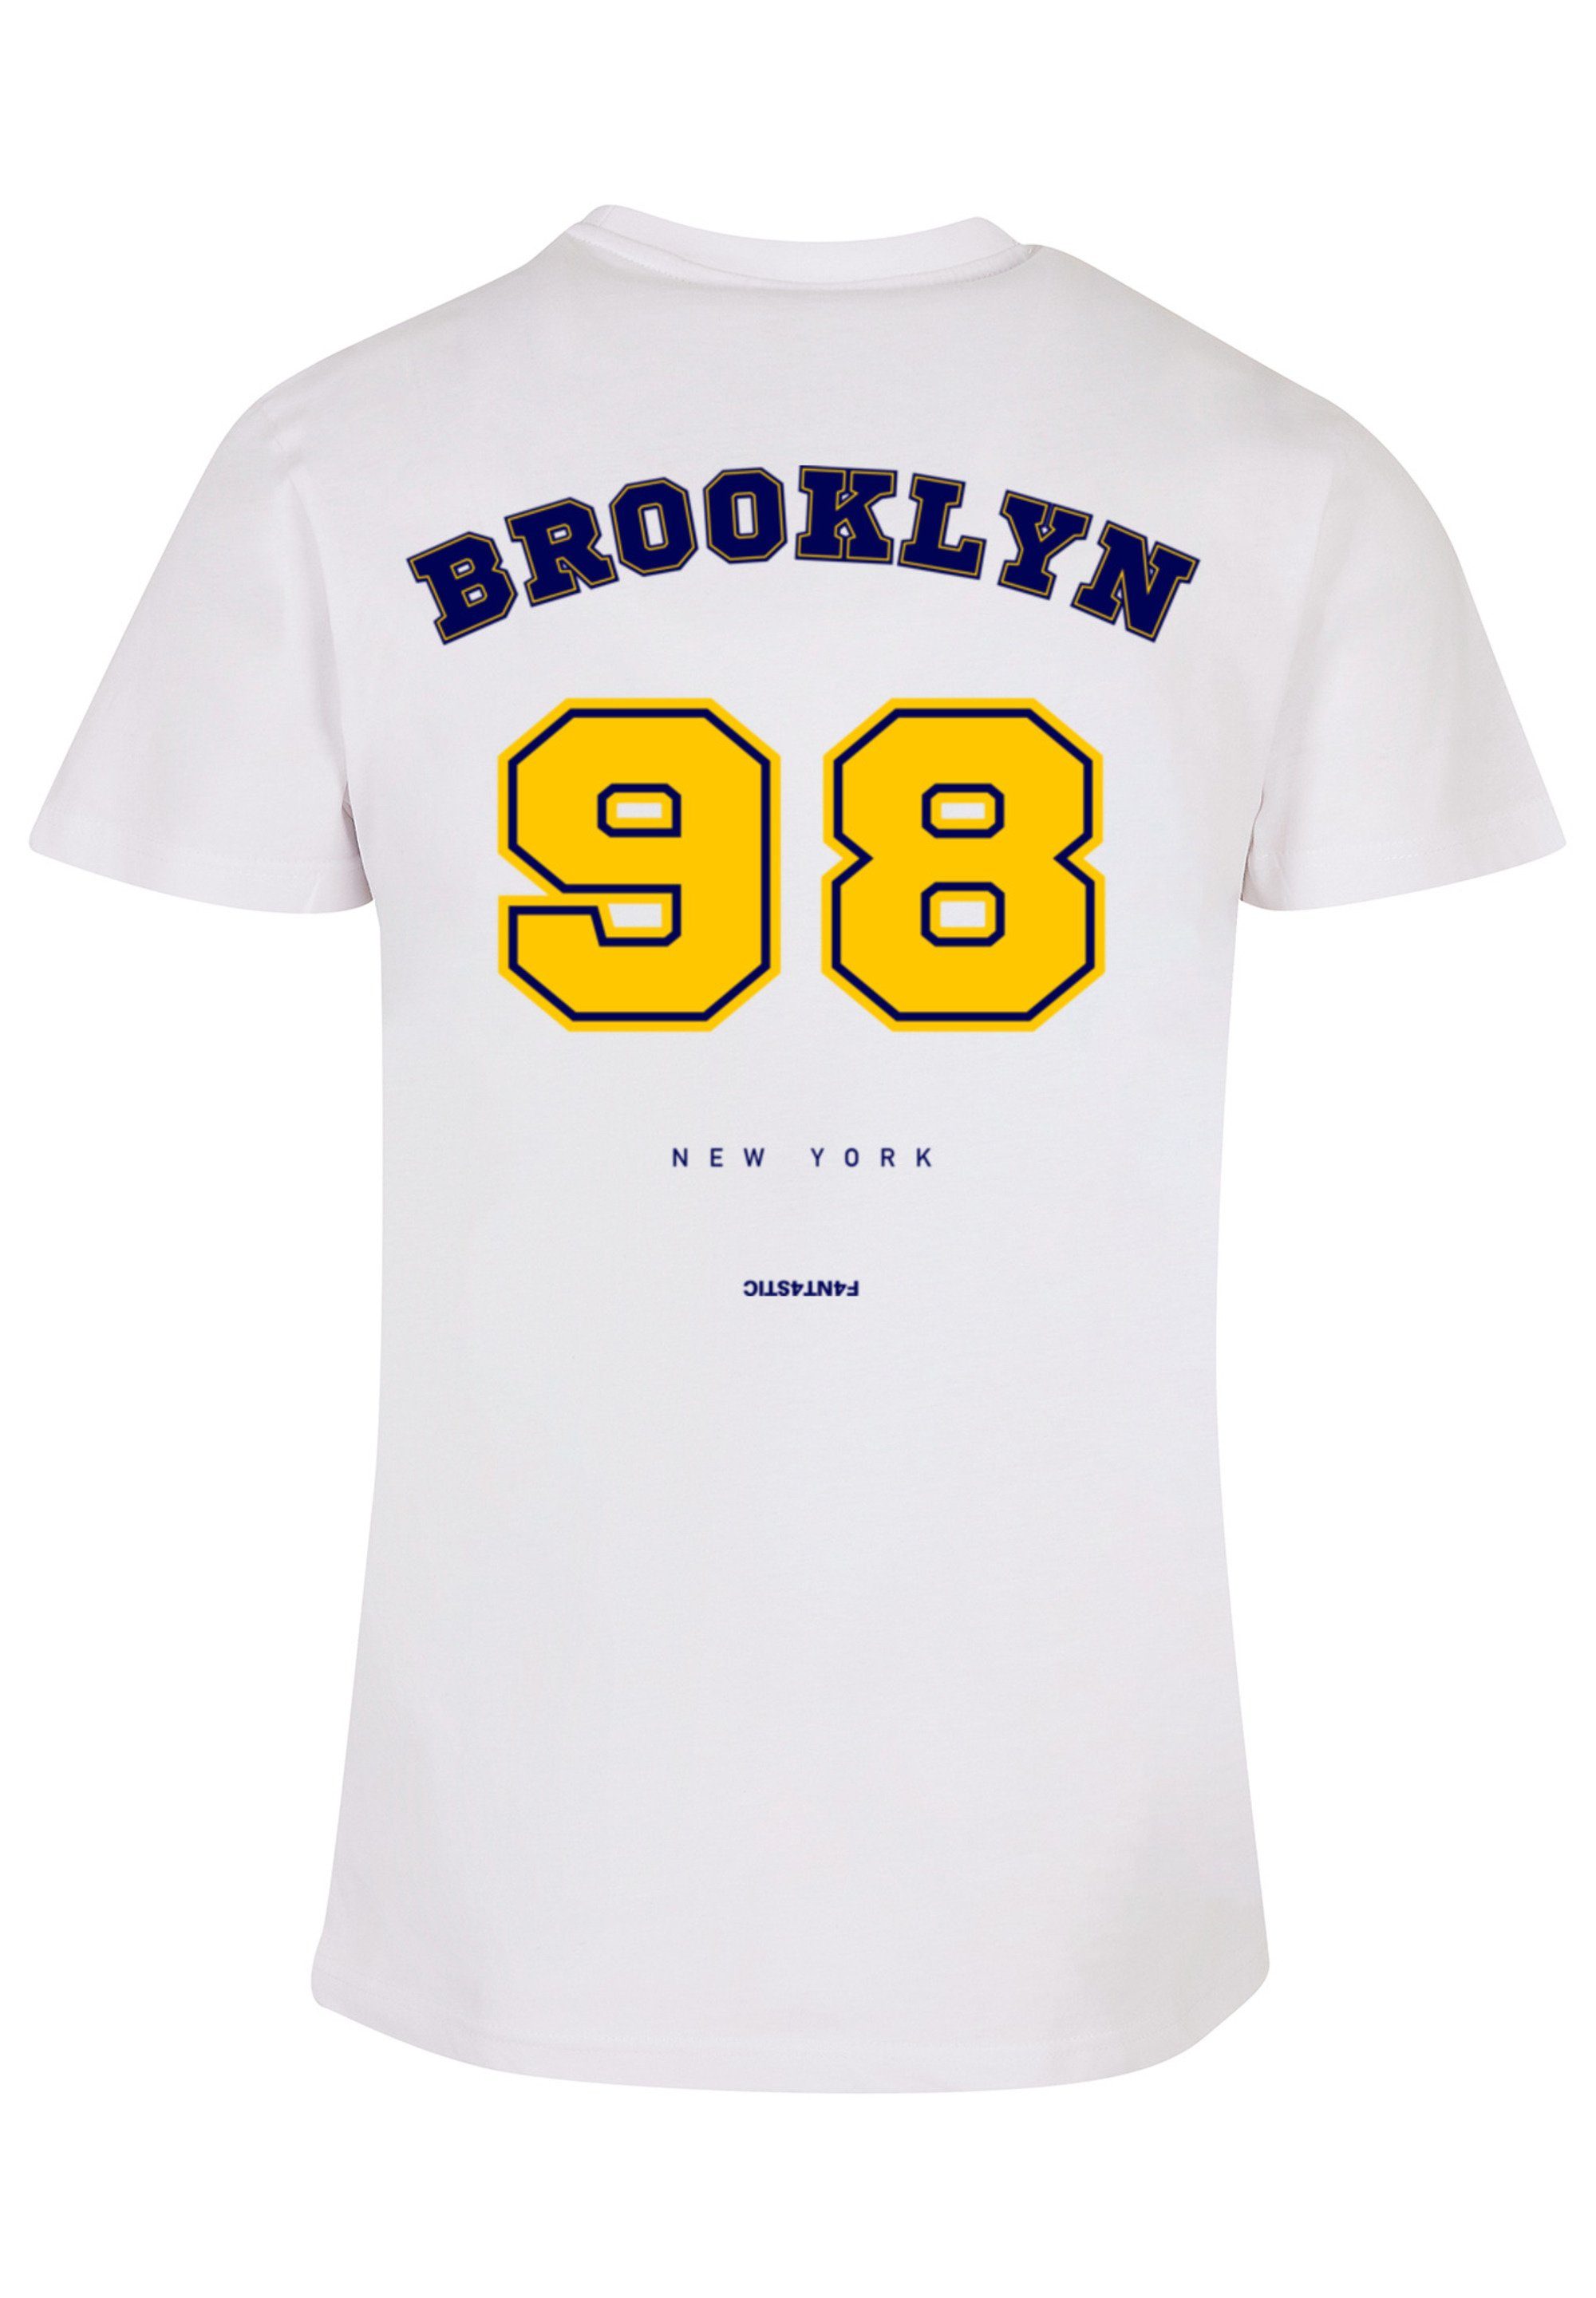 F4NT4STIC T-Shirt TEE weiß UNISEX NY Print 98 Brooklyn